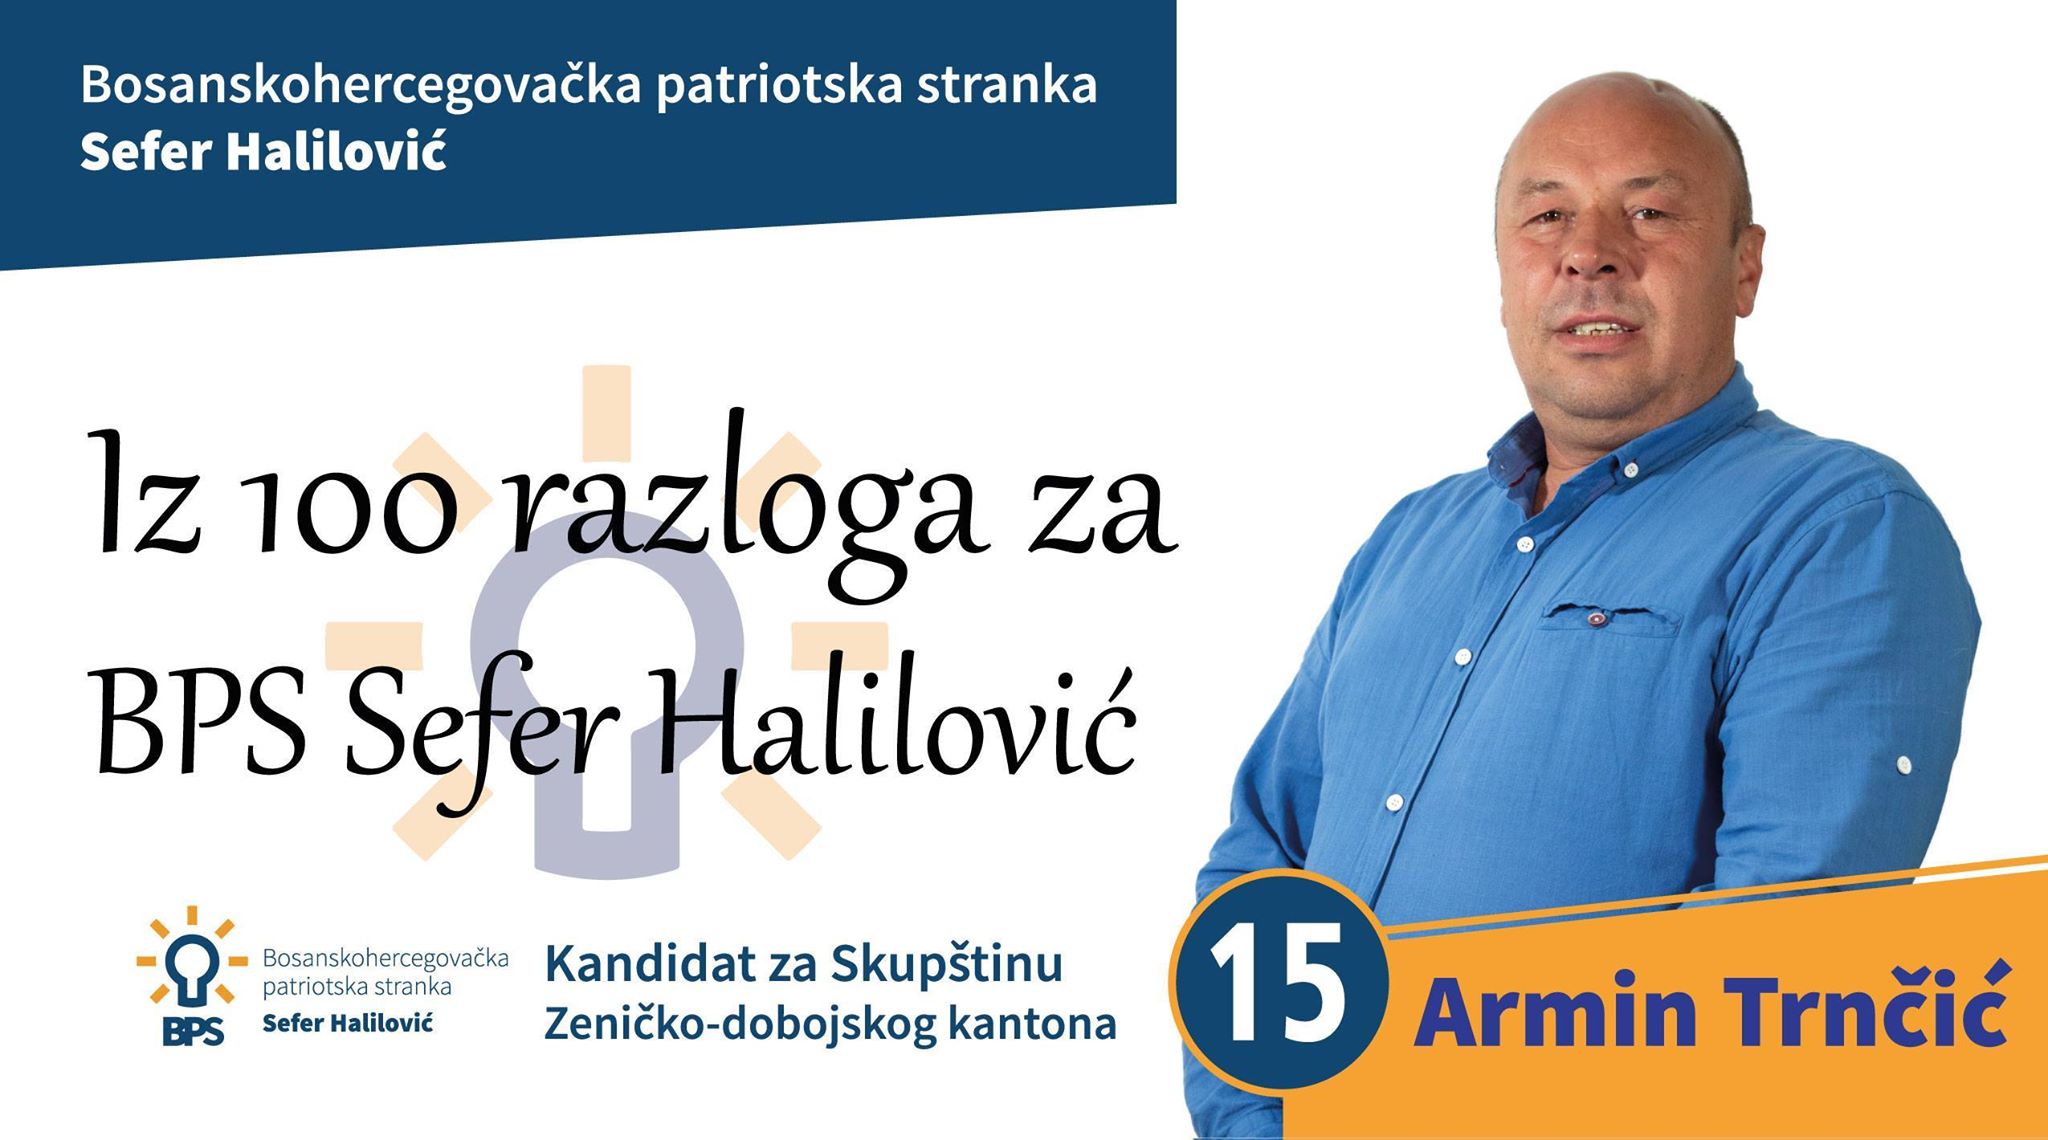 OO BPS Sefer Halilović Visoko: Armin Trnčić, kandidat za Skupštinu ZDK-a